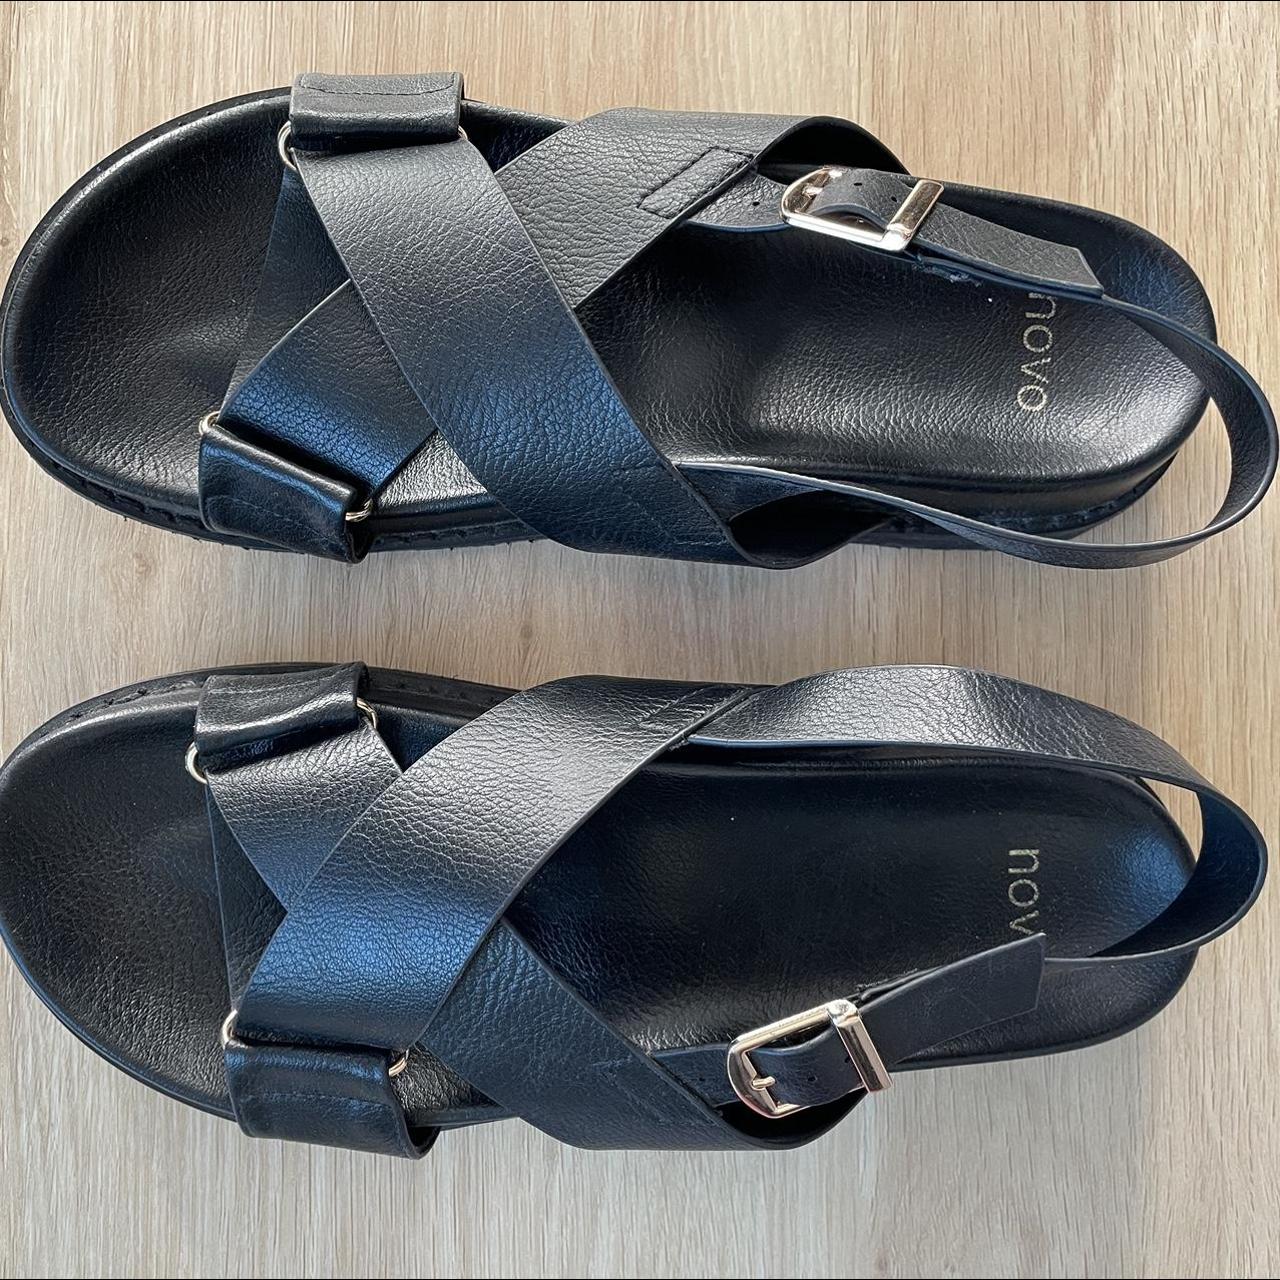 Cross over sandals // novo // size US 8 // worn once... - Depop